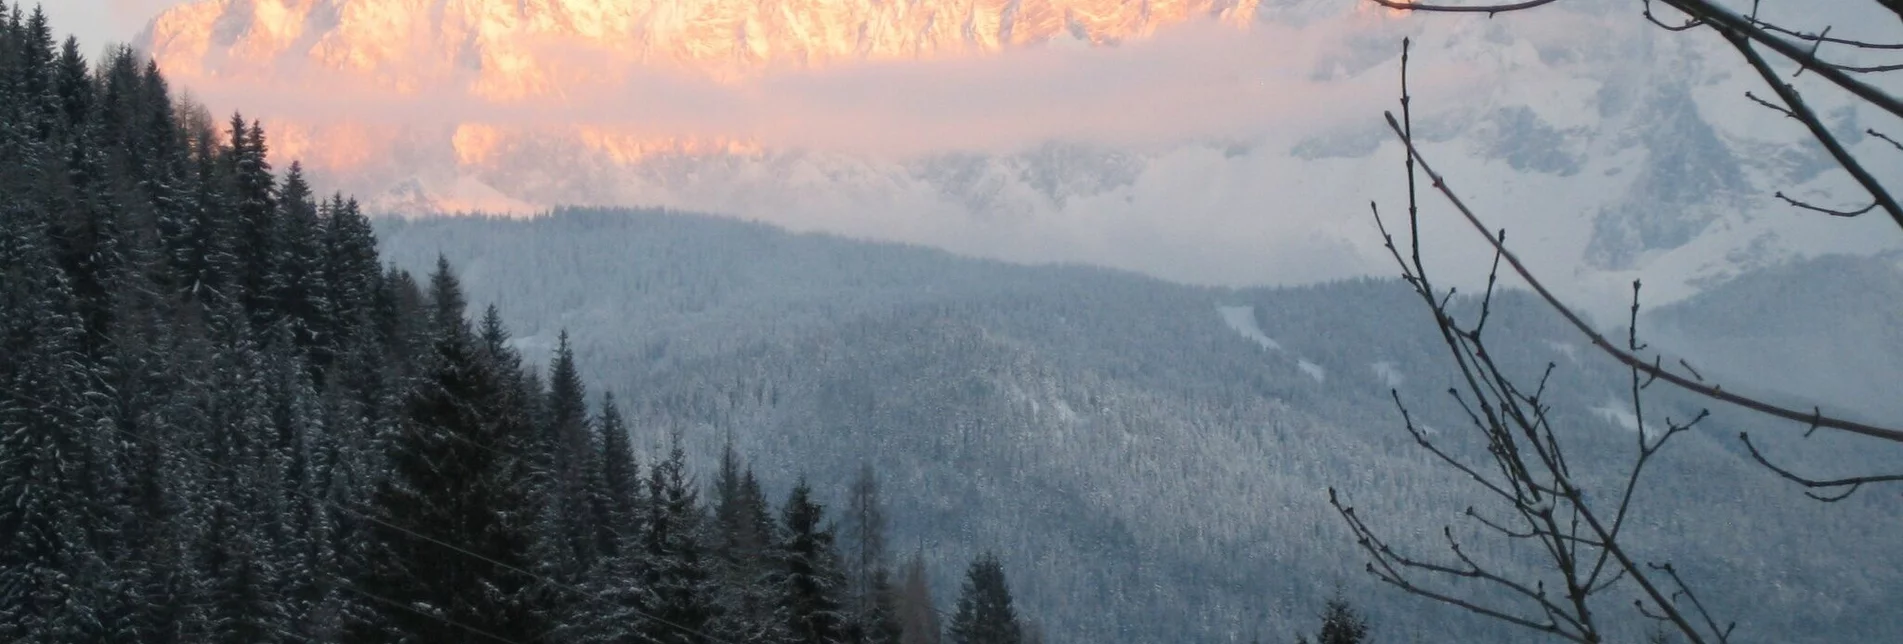 Winterwandern Reiteralm: Winterwanderung vom Berg ins Tal - Touren-Impression #1 | © Erlebnisregion Schladming-Dachstein